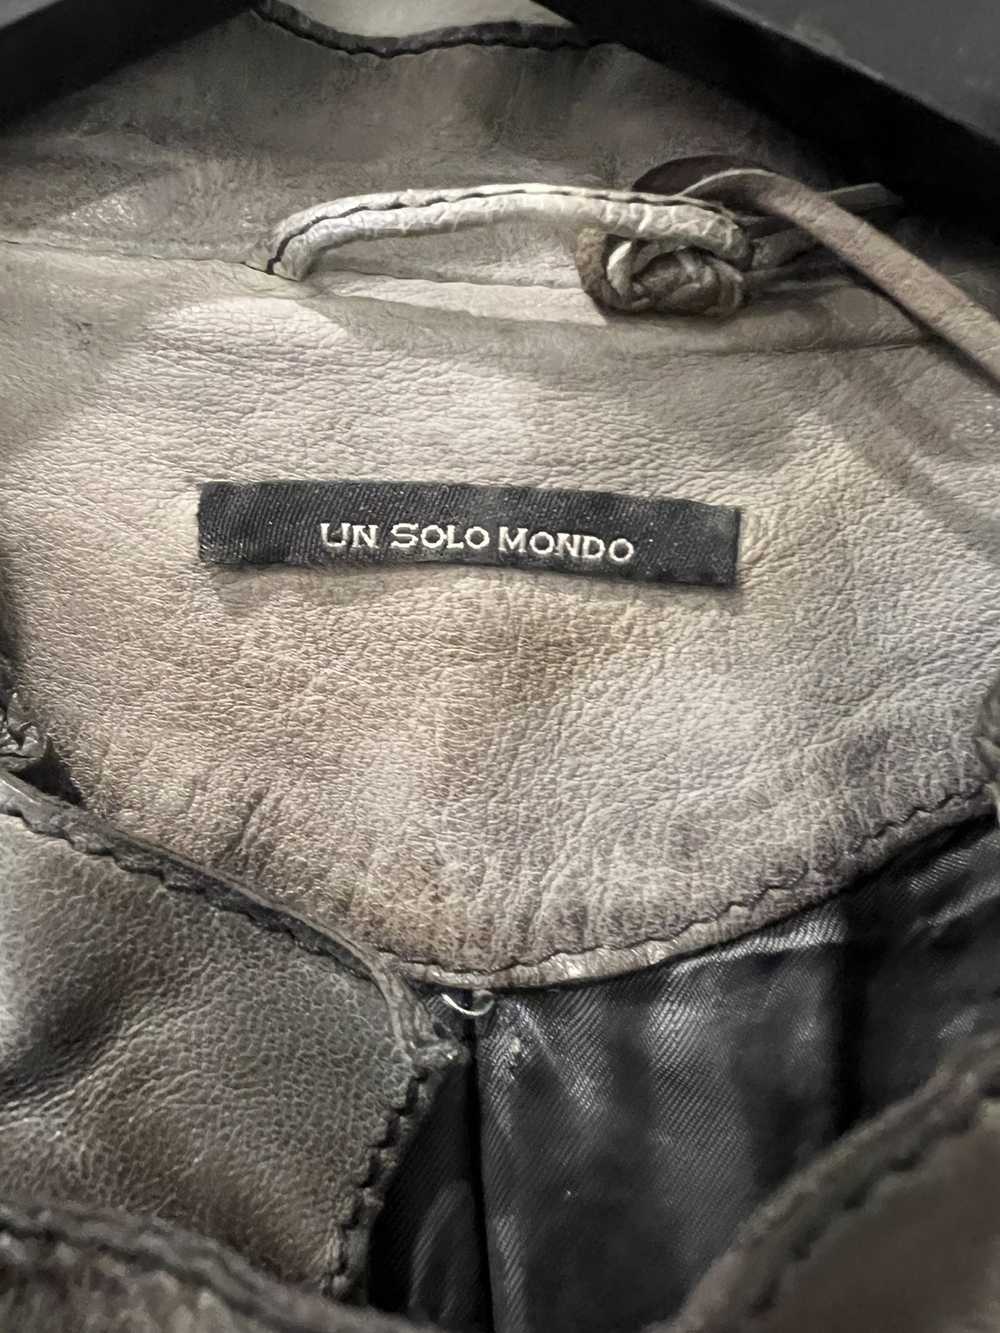 Un Solomondo Un solo mondo Leather jacket - image 3